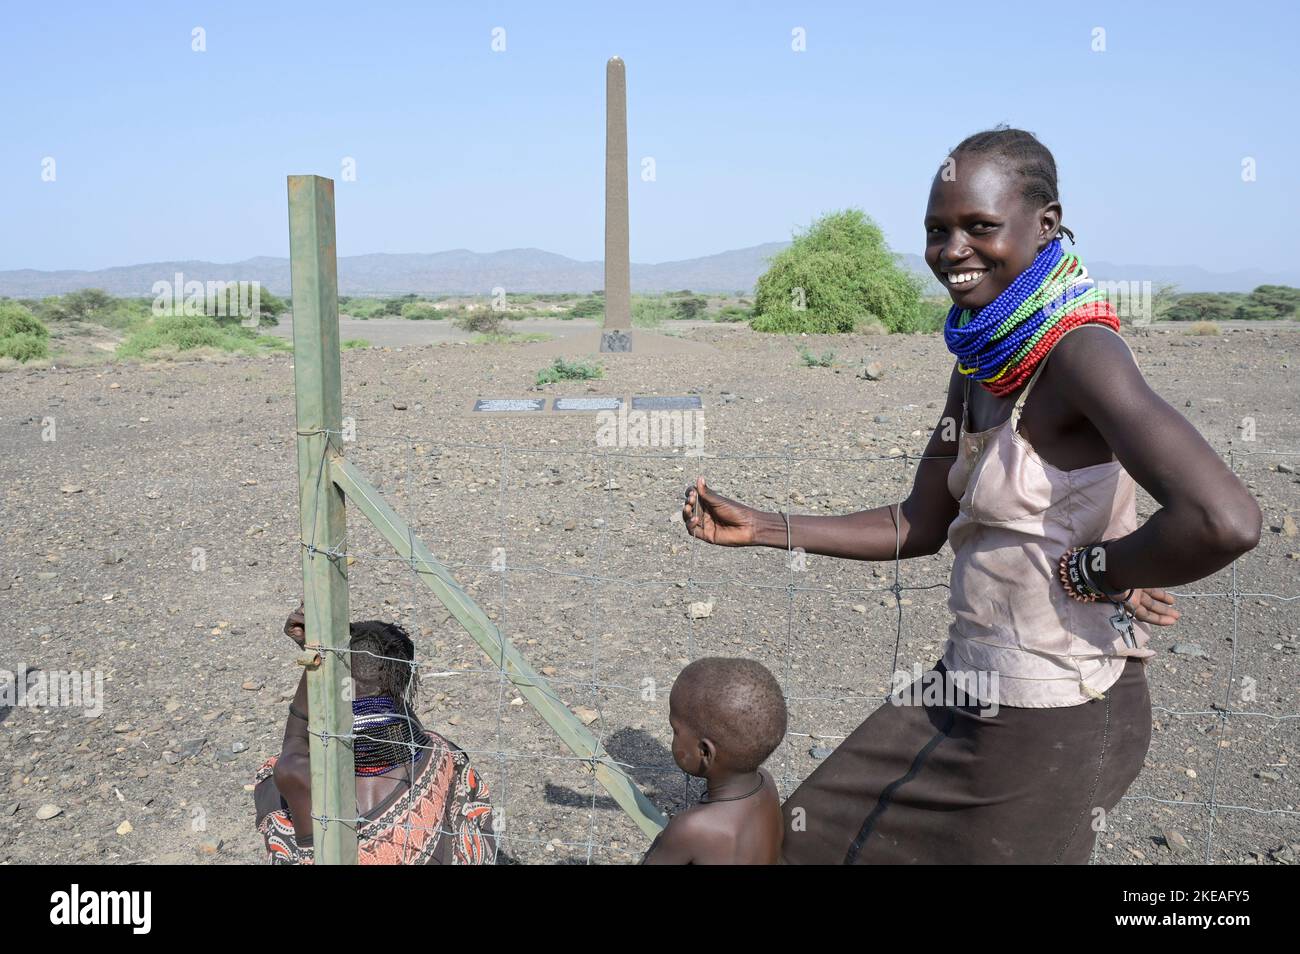 KENYA, Turkana, village Nariokotome, site d'excavation de Turkana Boy, également appelé Nariokotome Boy, est le nom donné au fossile KNM-WT 15000, un squelette presque complet d'un jeune Homo ergaster qui vivait il y a 1,5 à 1,6 millions d'années. Il a été découvert en 1984 par Kamoya Kimeu sur la rive de la rivière Nariokotome près du lac Turkana au Kenya / KENIA, Turkana, Dorf Nariokotome, Ausgrabungsstätte und Fundort des 'Turkana Boy', ein 1,6 Millionen Jahre altes chliches Skelett, Nariokotome et mänzeotome Fossil-jälbeo-jähnicnen jugendlichen individuels der Gattung Homo Ergaster, dessen auße Banque D'Images